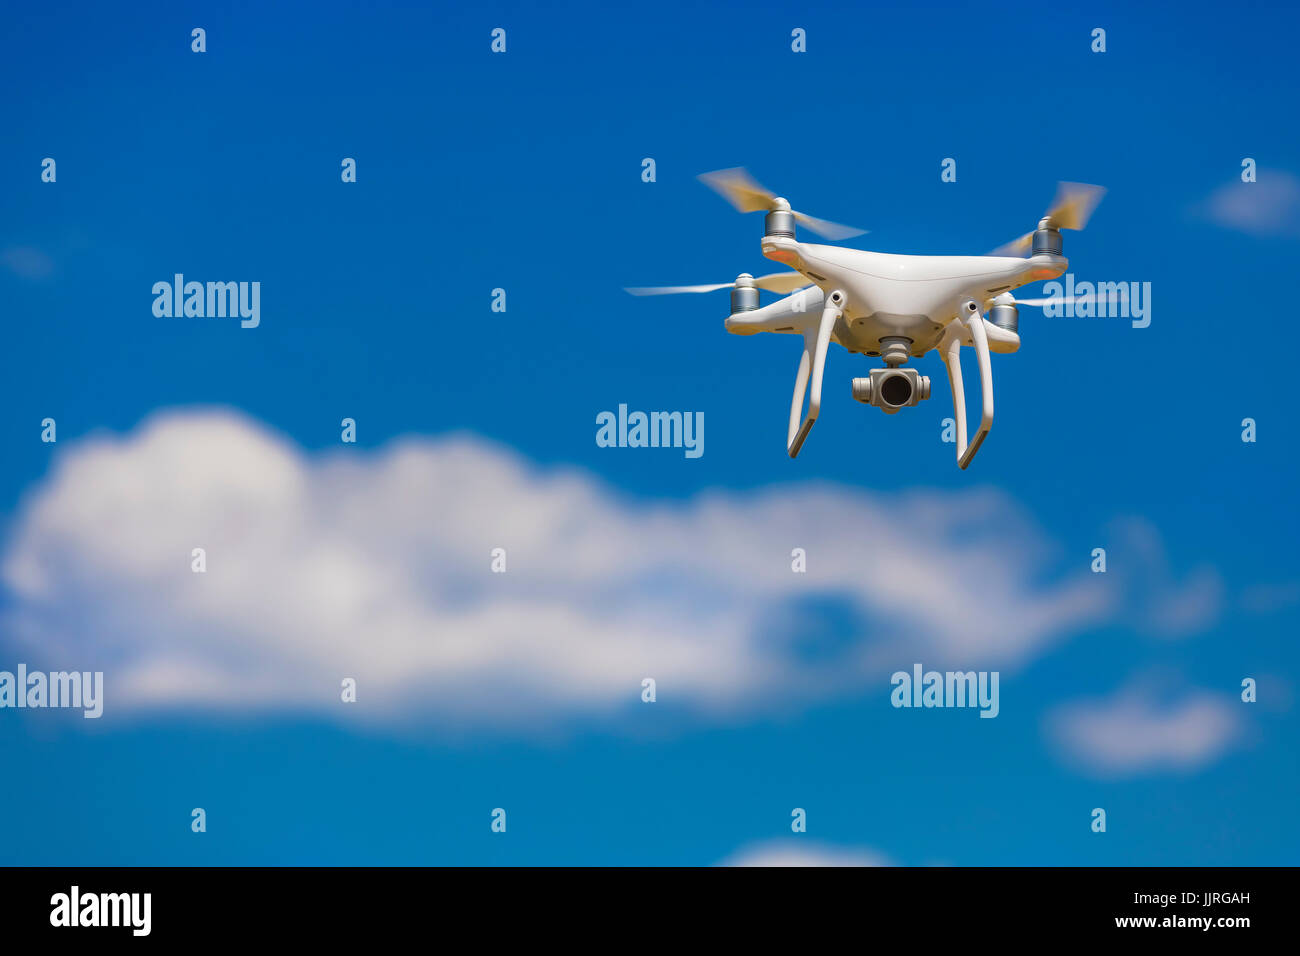 Professionelle Kamera-Drohne fliegen in klaren, blauen Himmel teilweise getrübt Stockfoto